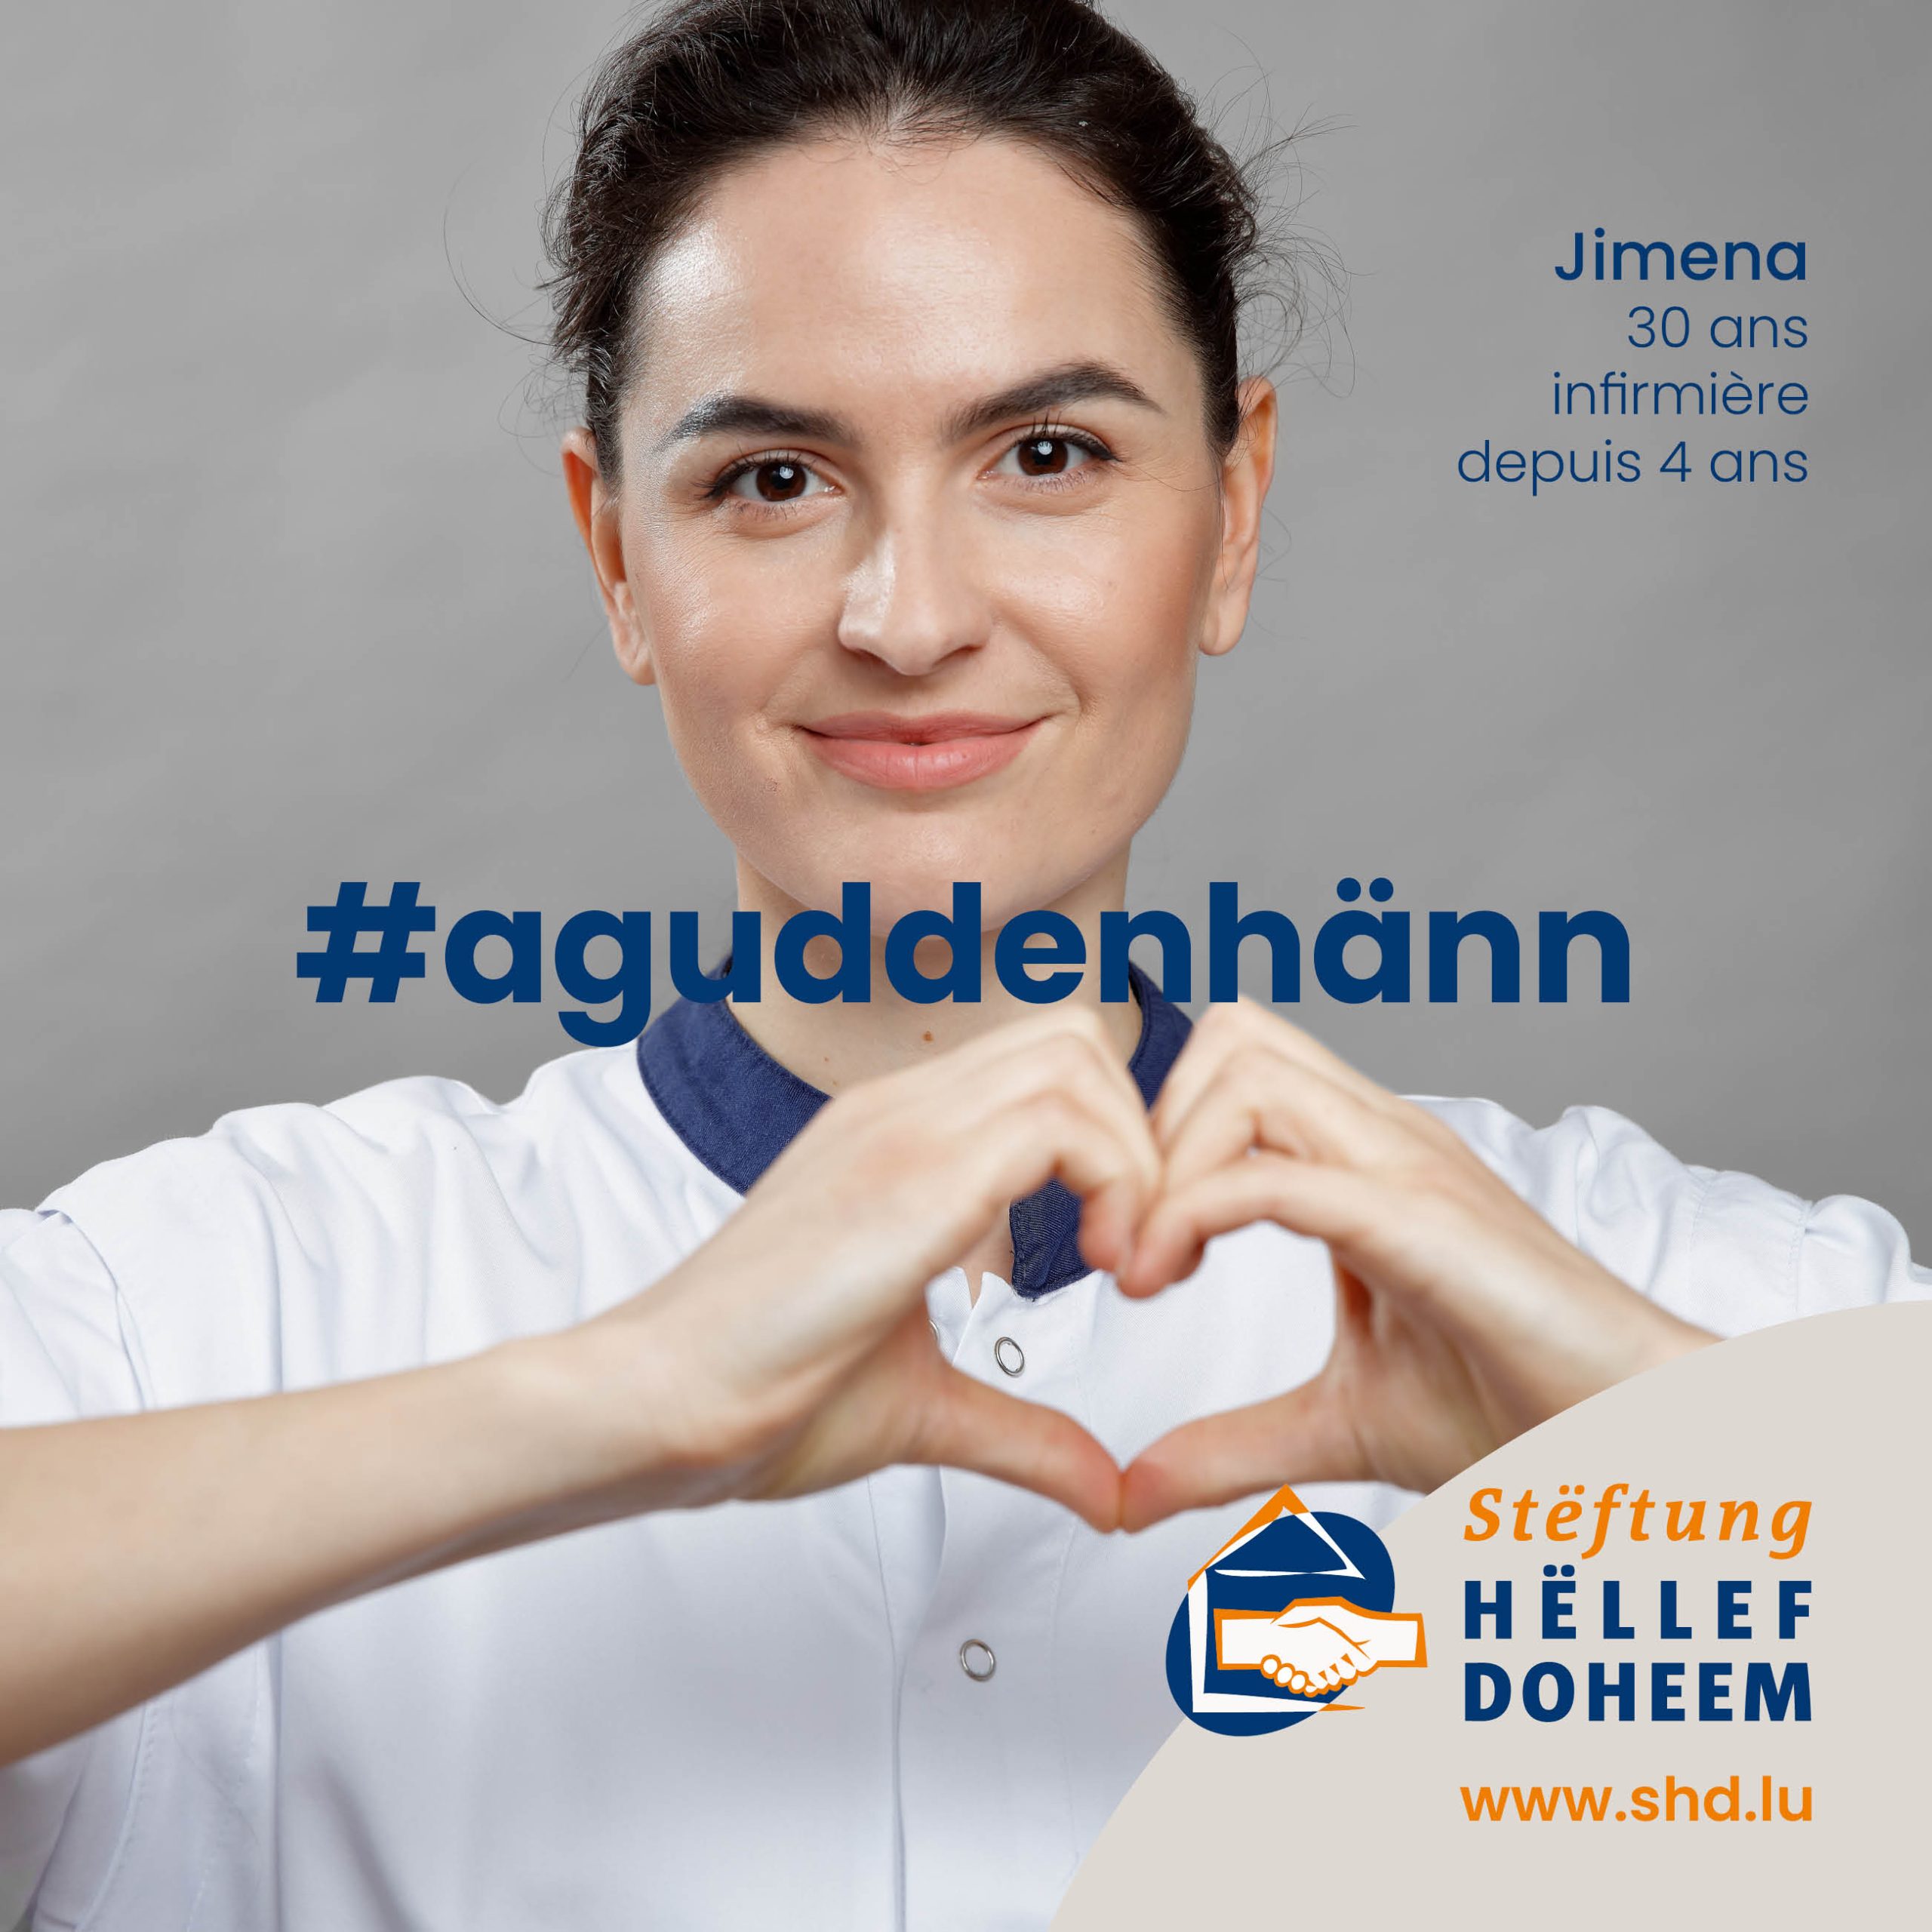 Infirmière de Hëllef Doheem montrant un coeur avec ses mains